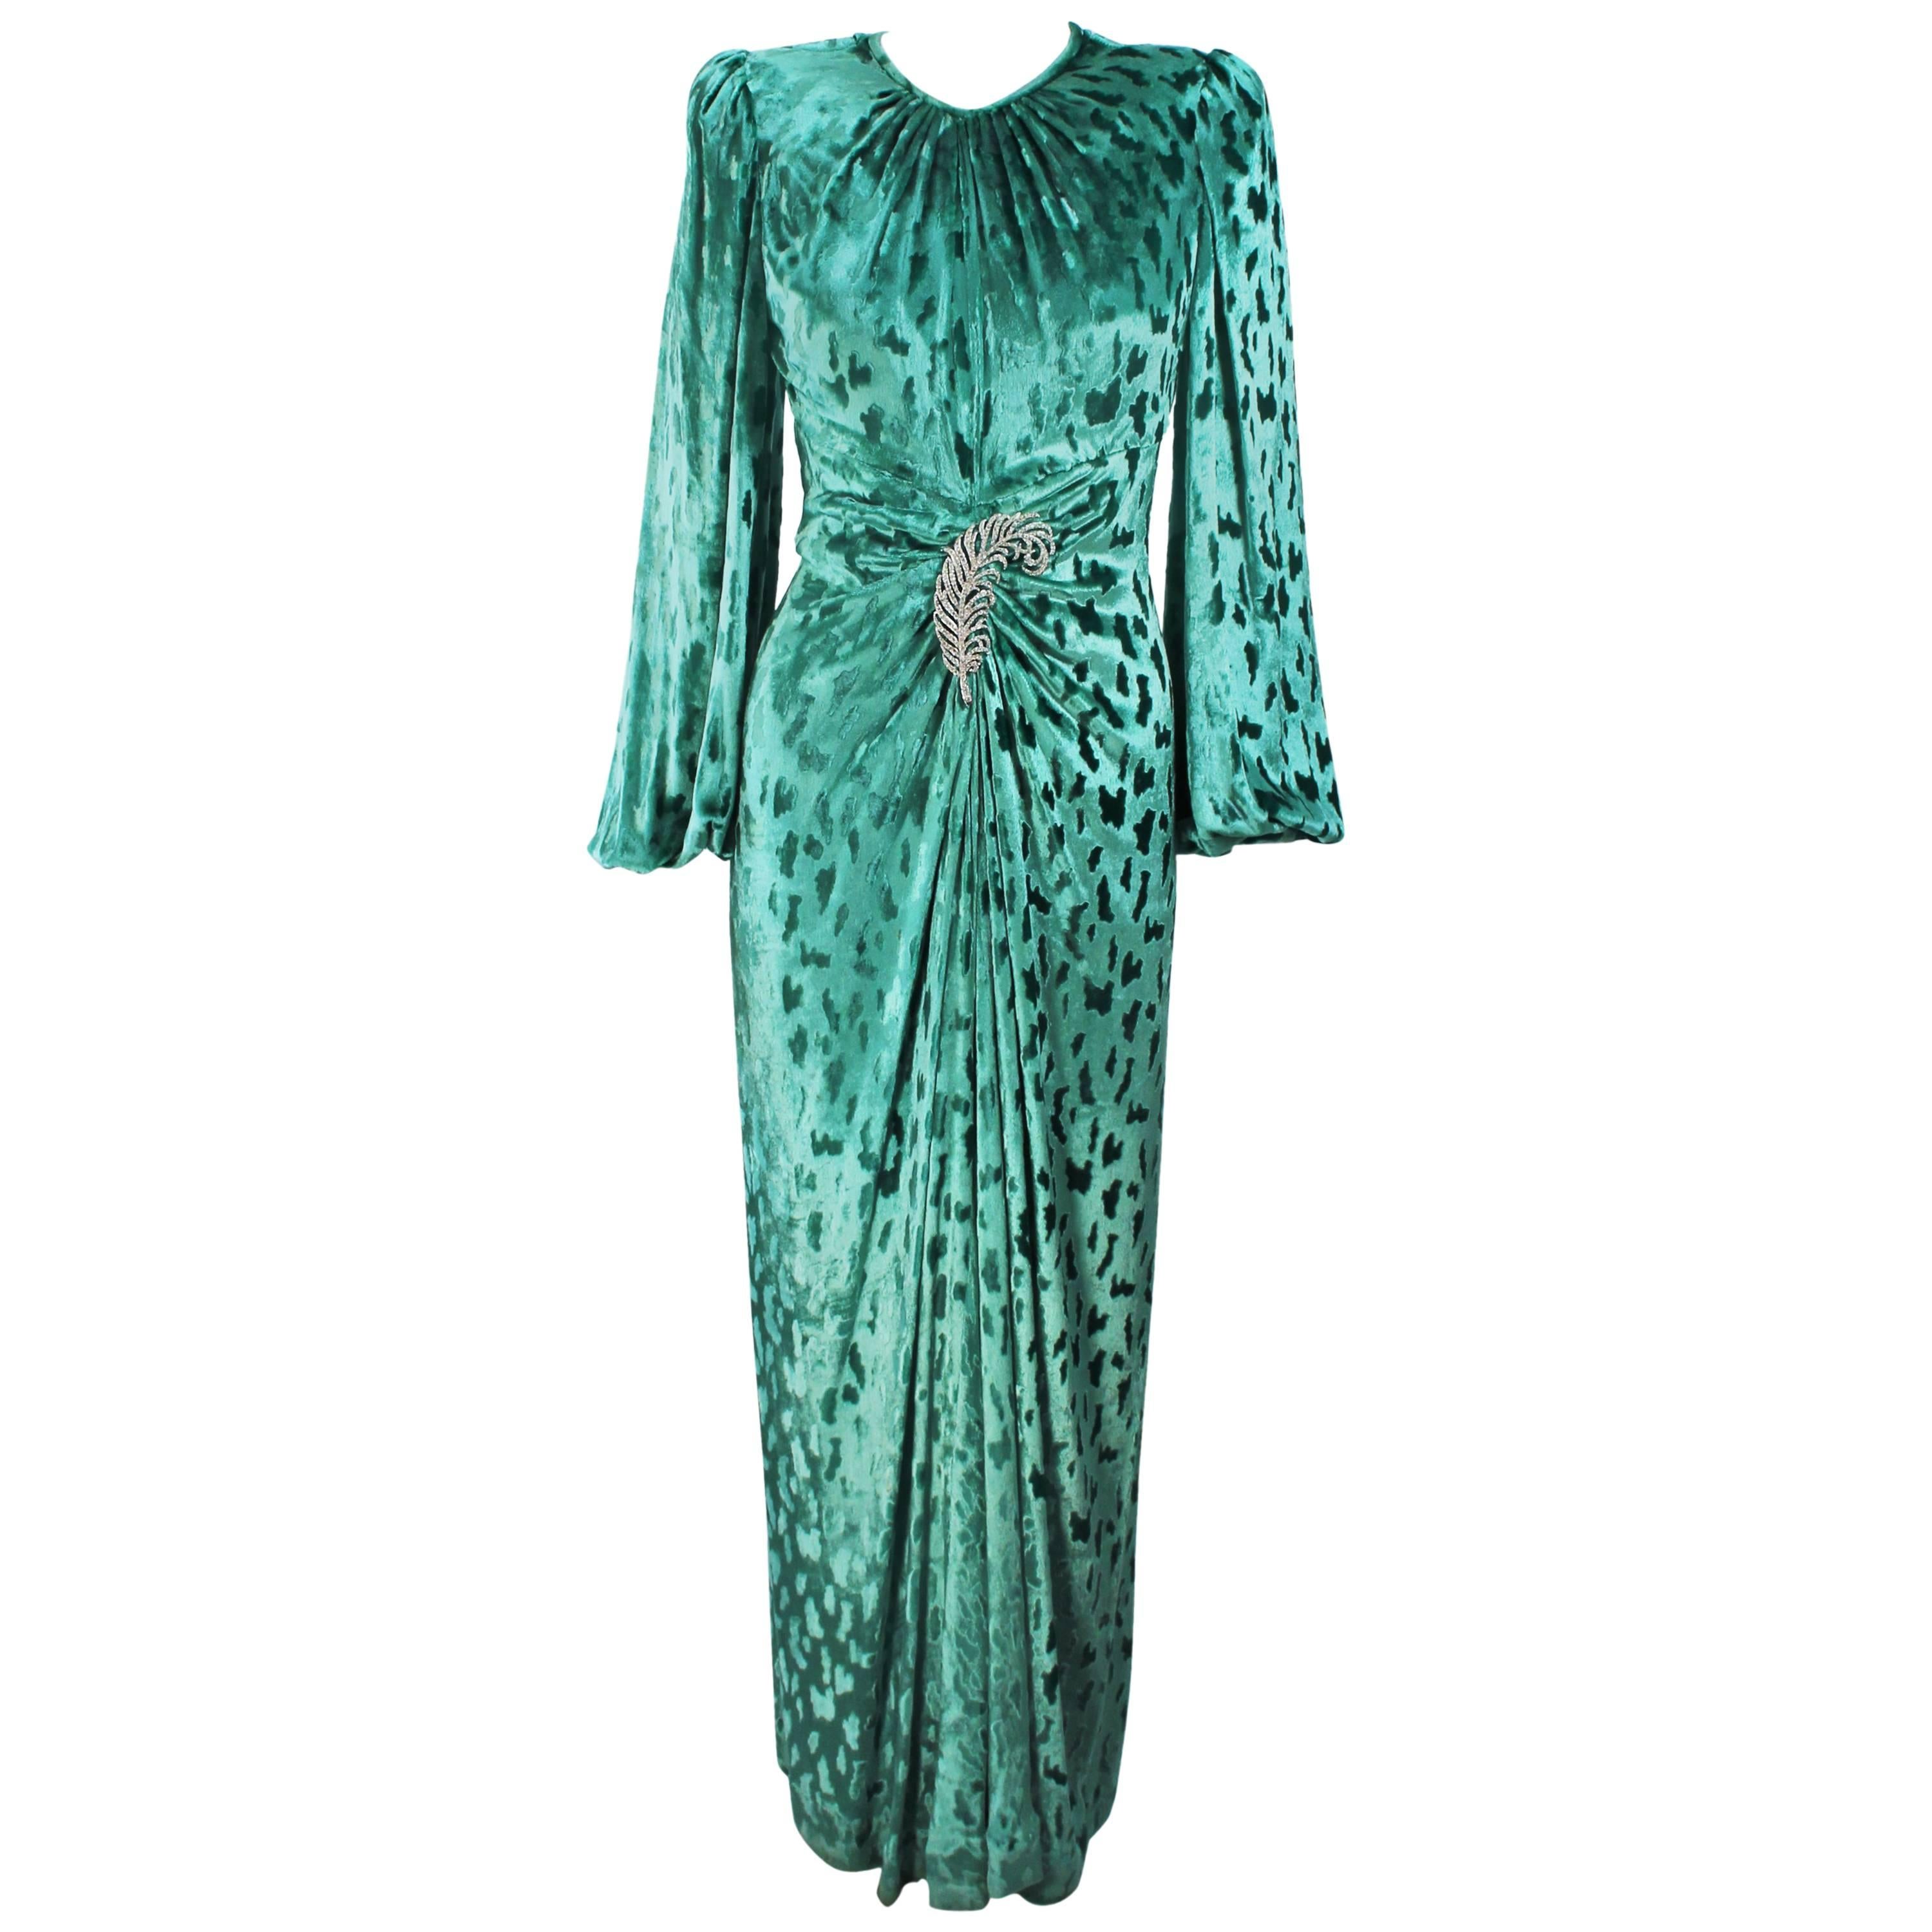 OSCAR DE LA RENTA Draped Mint Velvet 'Nancy Reagan'  Gown with Brooch Size 4-6